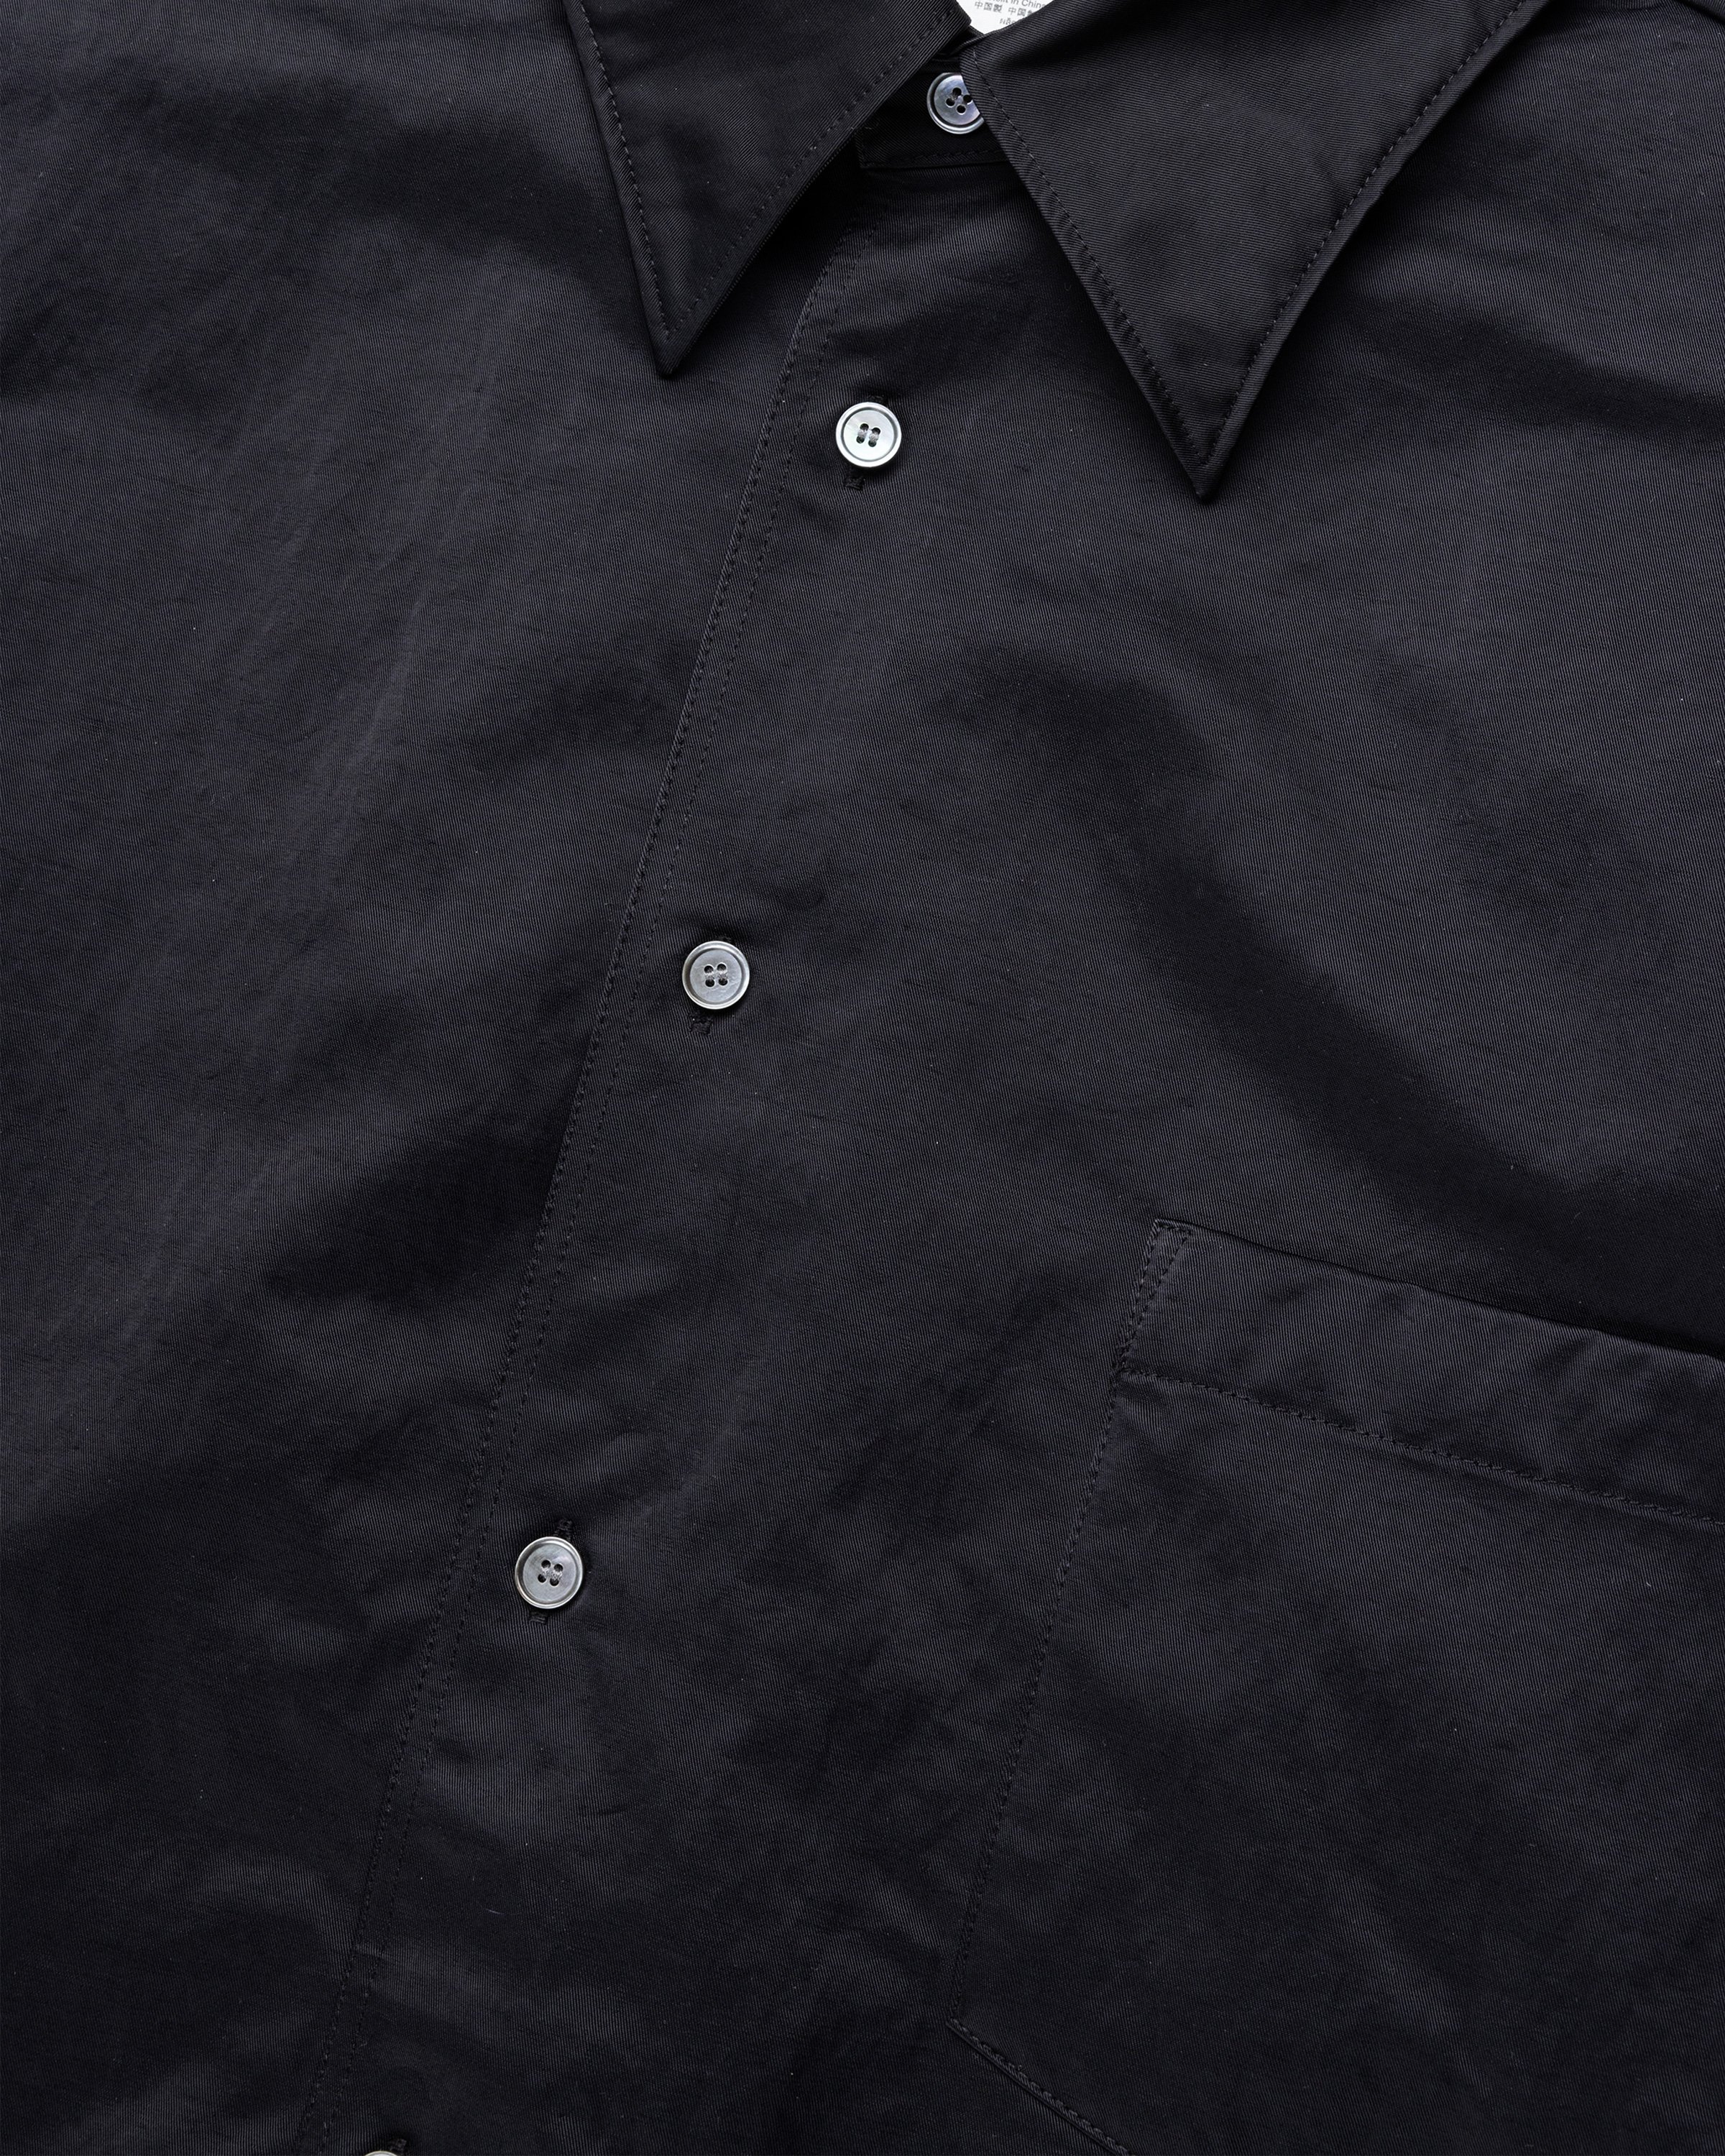 Acne Studios - Nylon Overshirt Black - Clothing - Black - Image 7